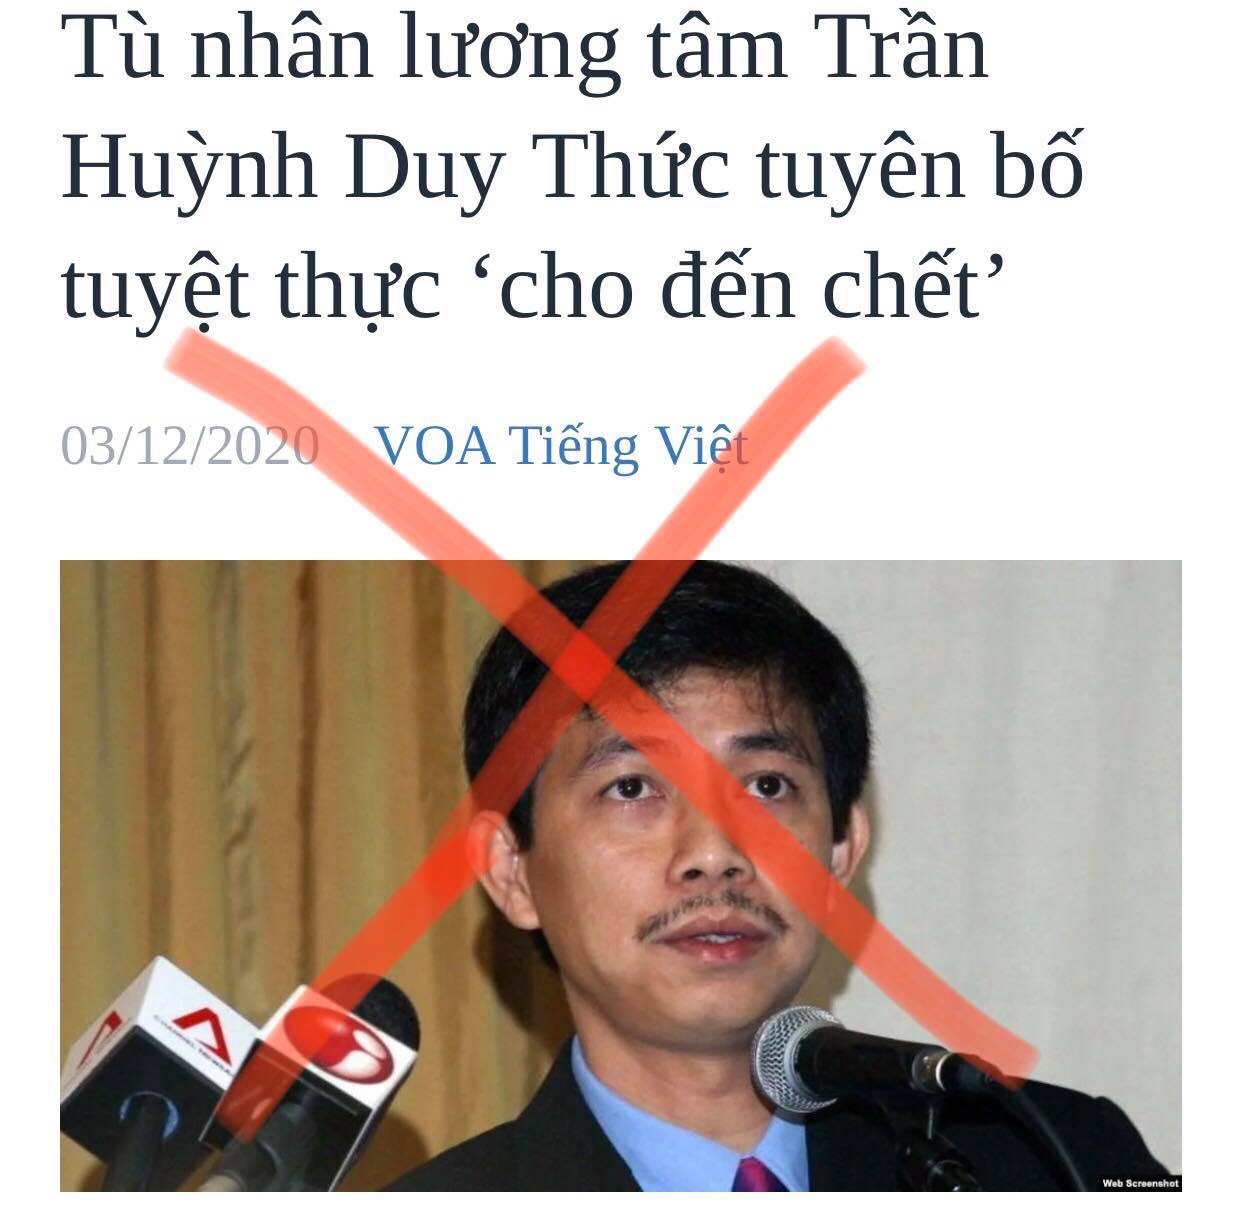 Góc luận đàm về các “nhà dân chủ” cuội đang cố tình chống phá Việt Nam!